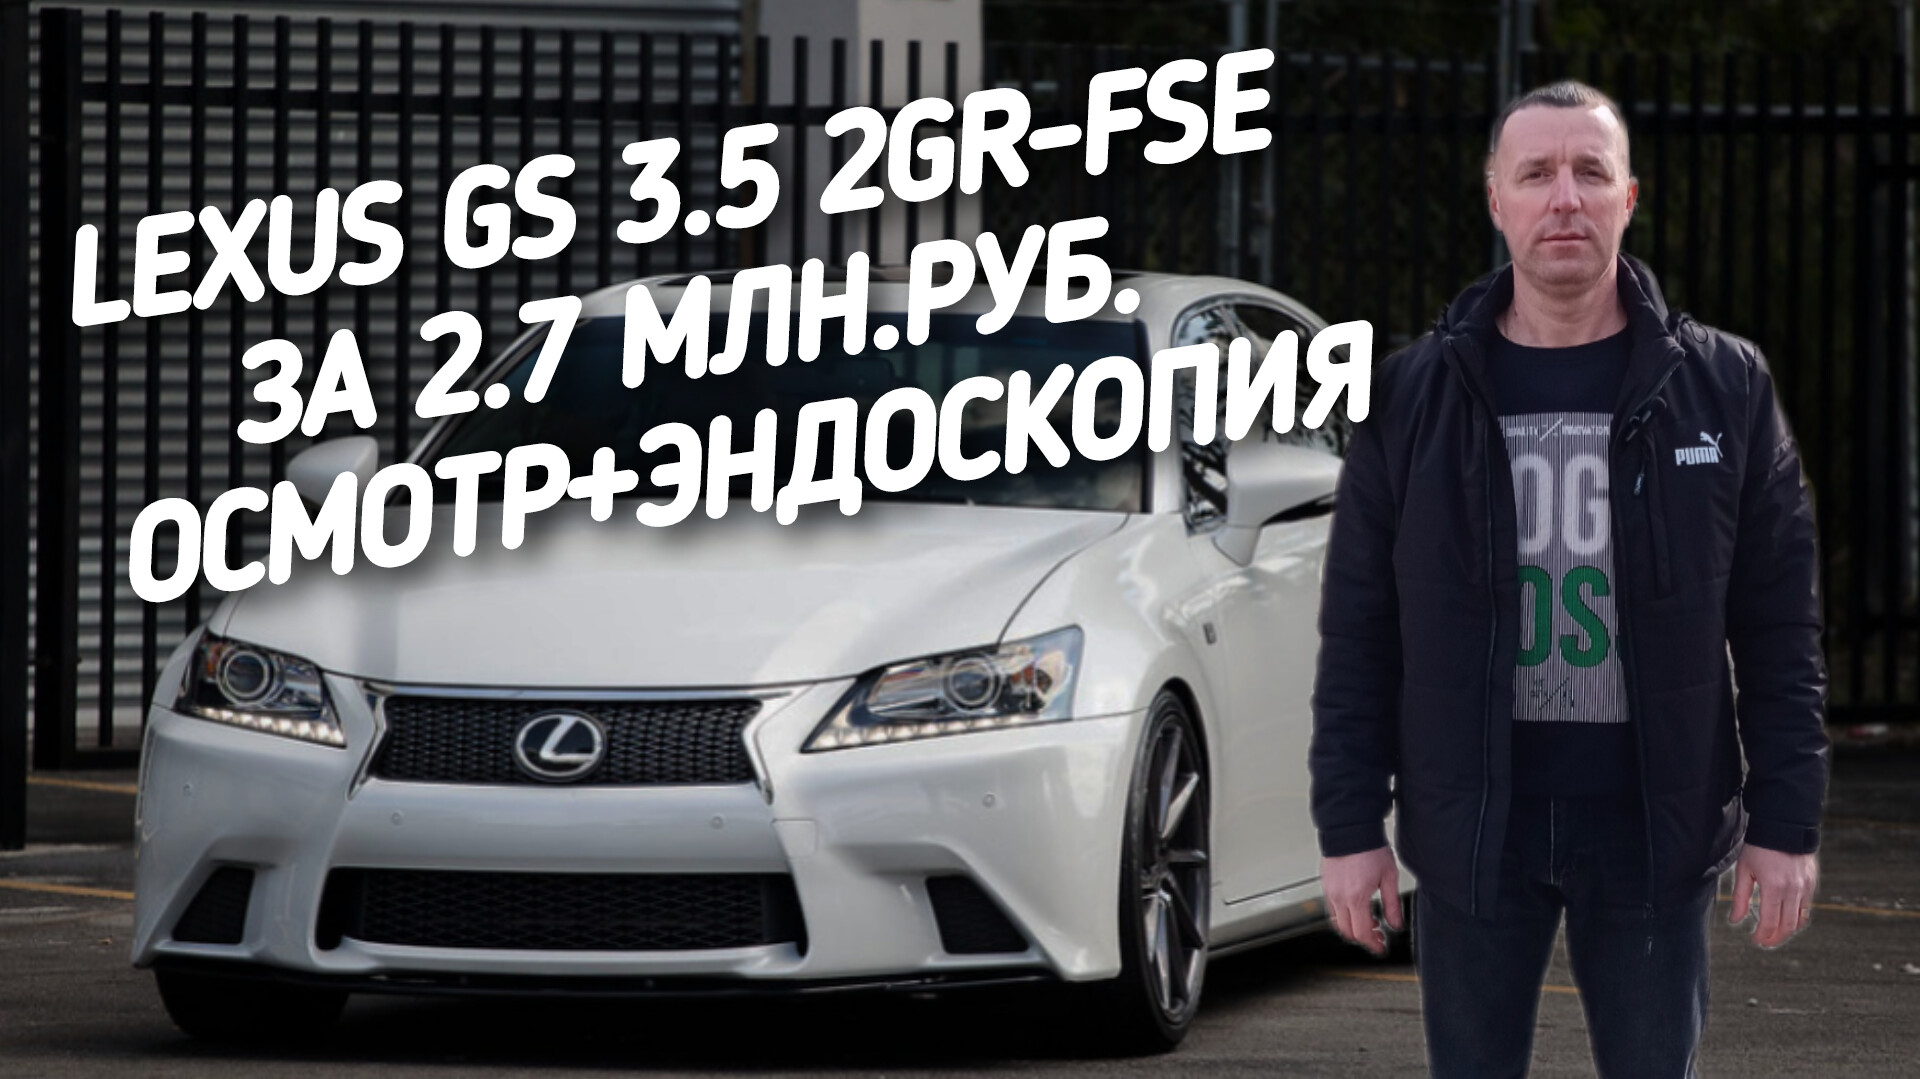 Lexus GS 3.5 ЗА 2.7МЛН.РУБ.ОСМОТР+ЭНДОСКОПИЯ.